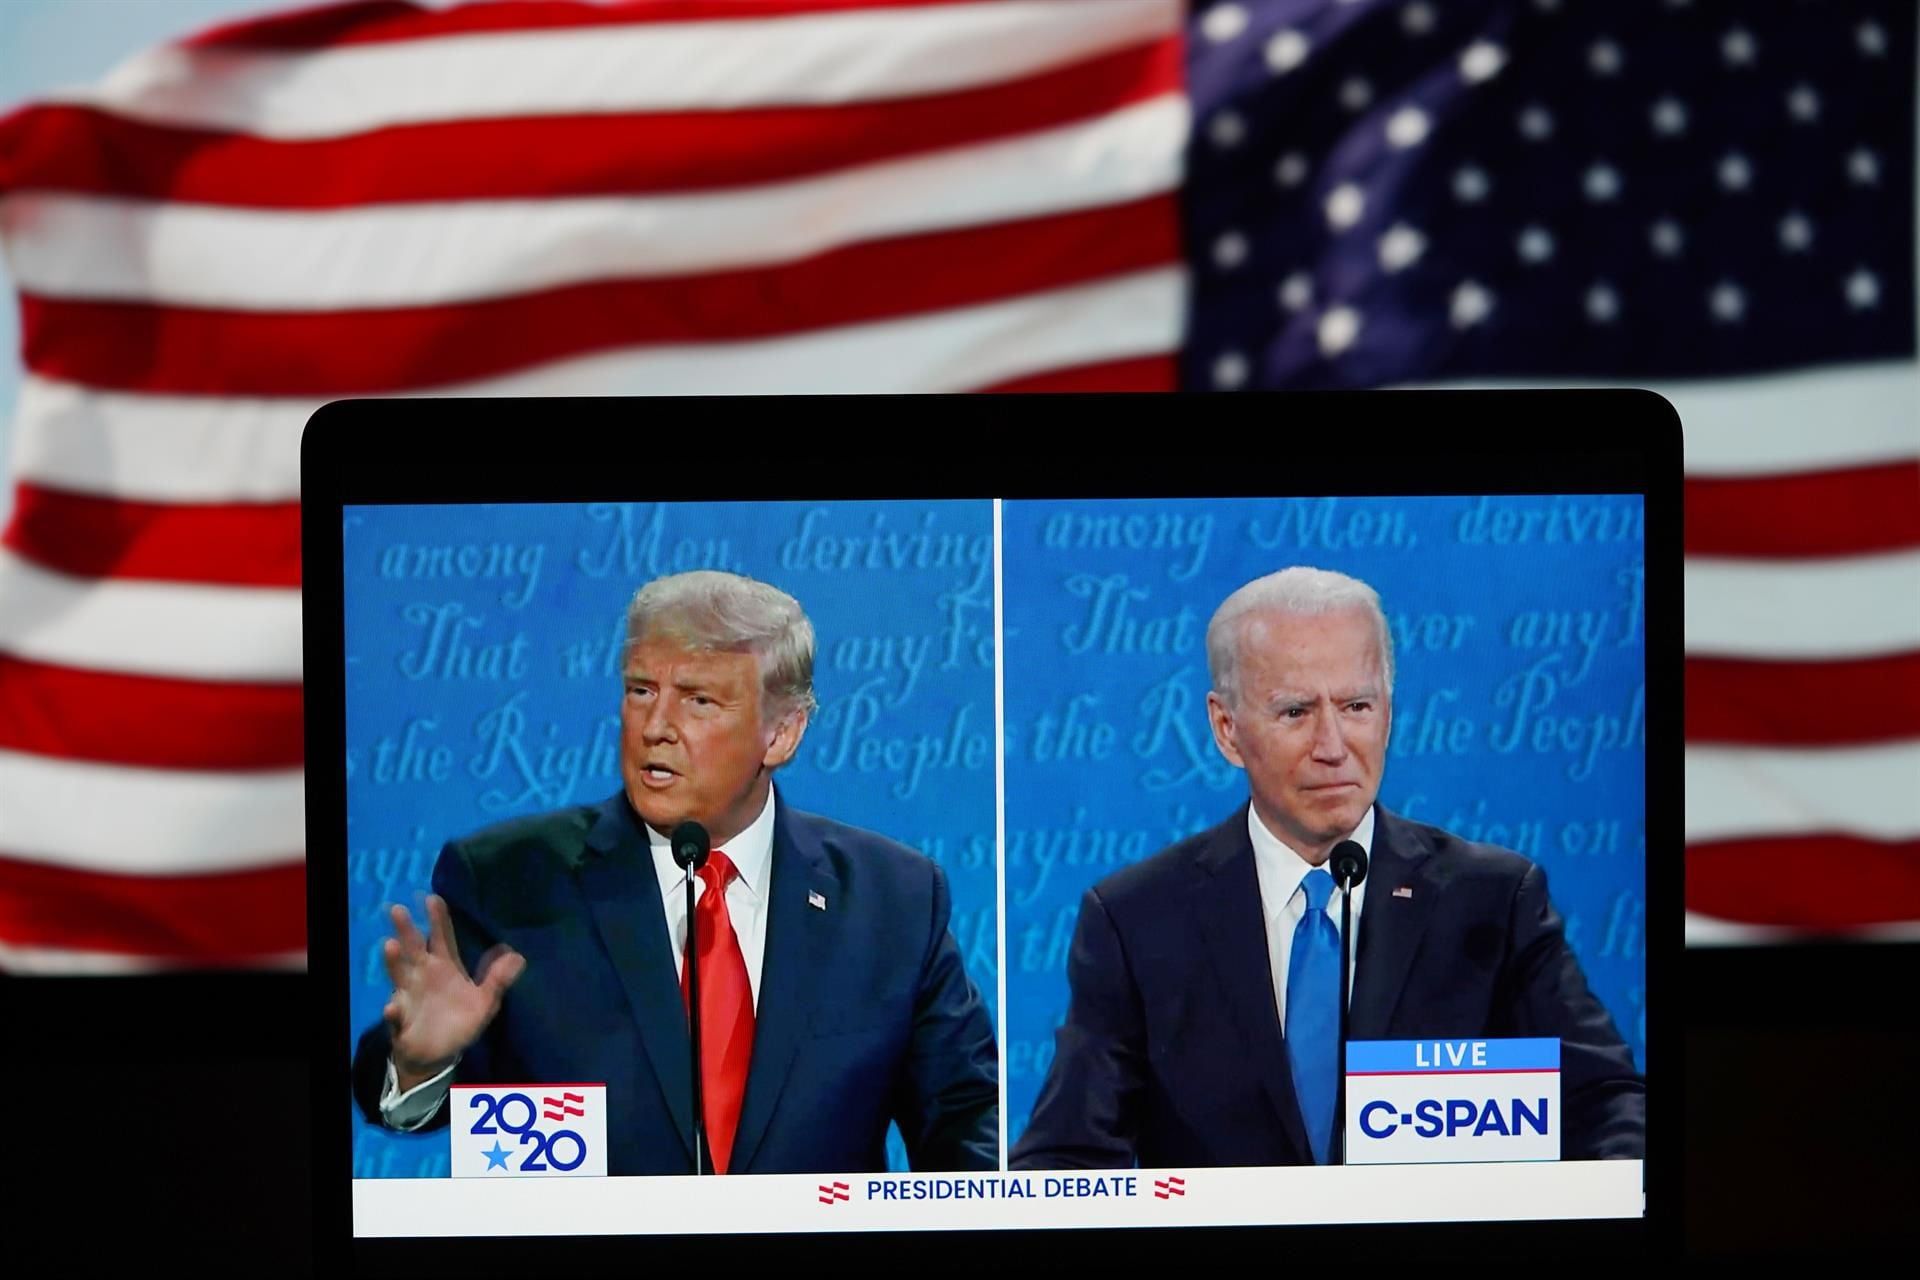 Biden afirma que estaría “encantado” de debatir con Trump en la campaña electoral